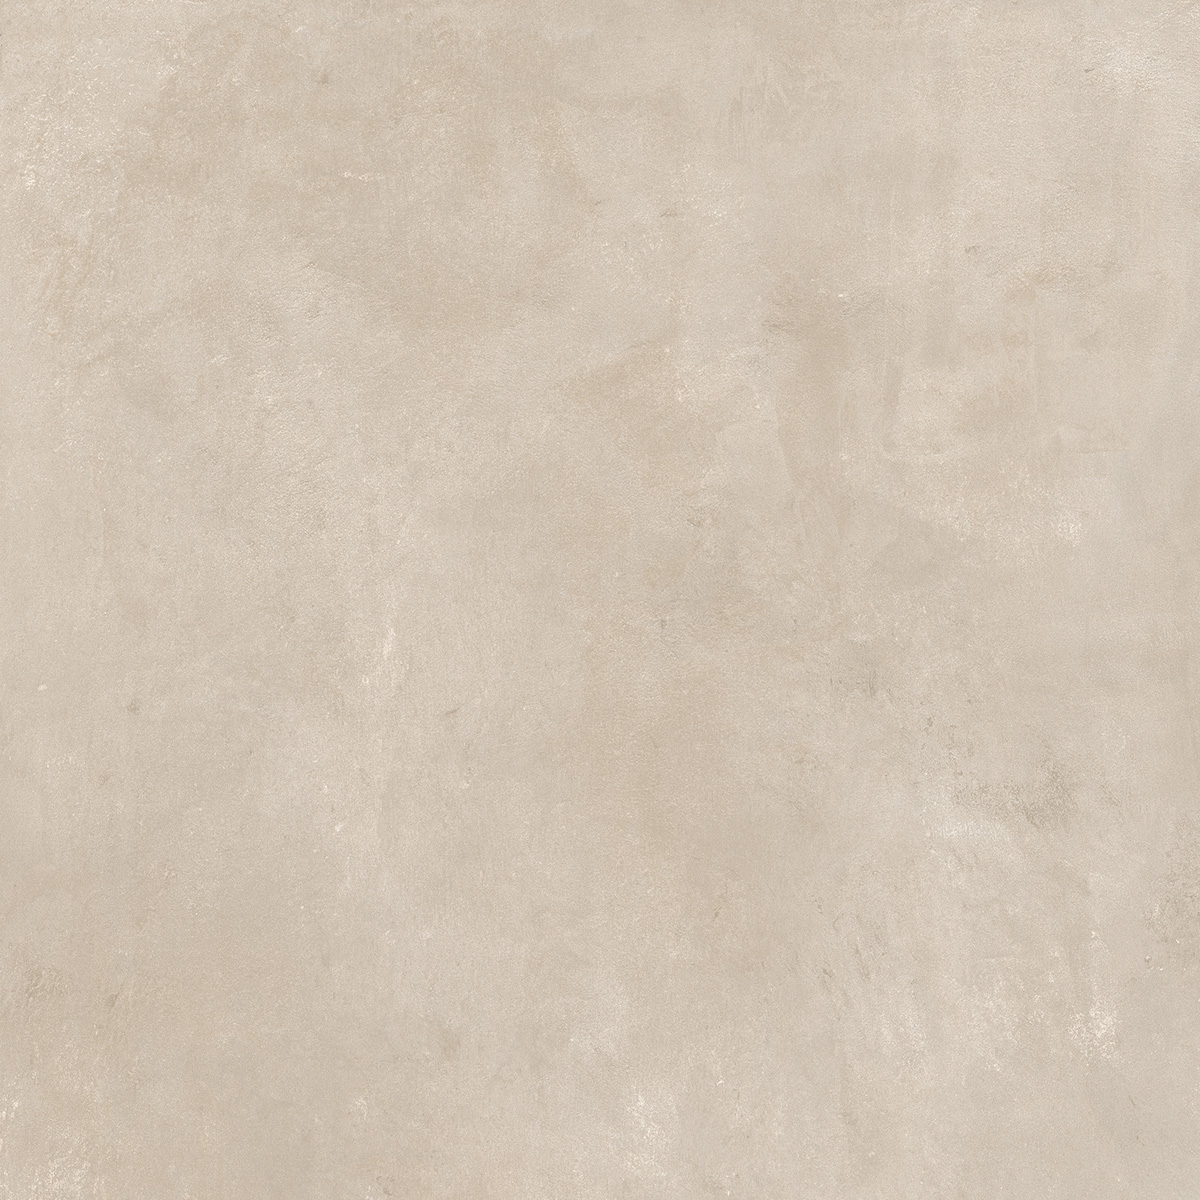 Jabo Tegelsample:  Beton Cire Bercy Nude vloertegel beige 60x60cm gerectificeerd